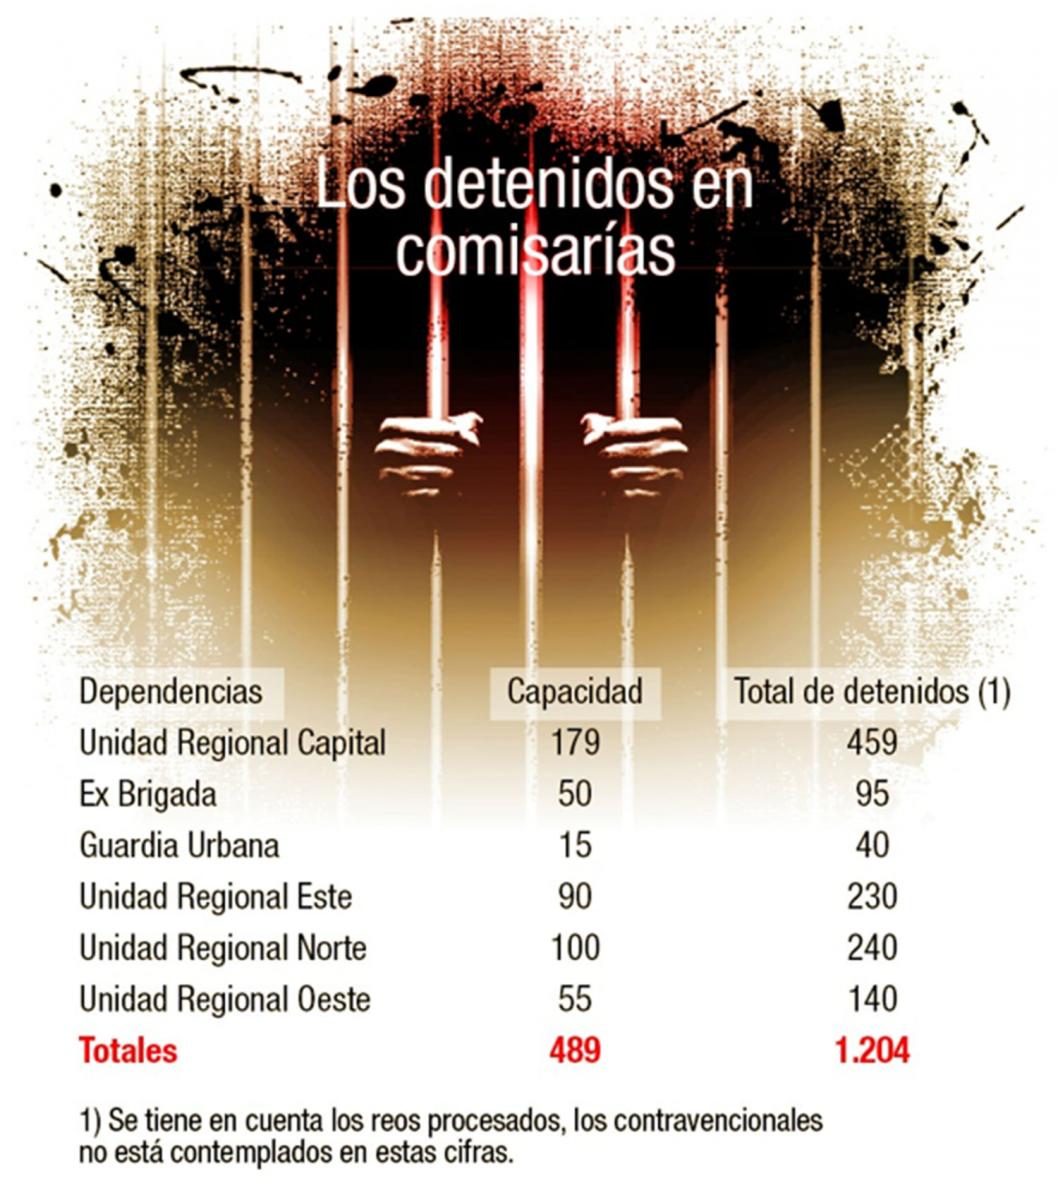 Crisis carcelaria: familiares denuncian irregularidades en el trato de detenidos